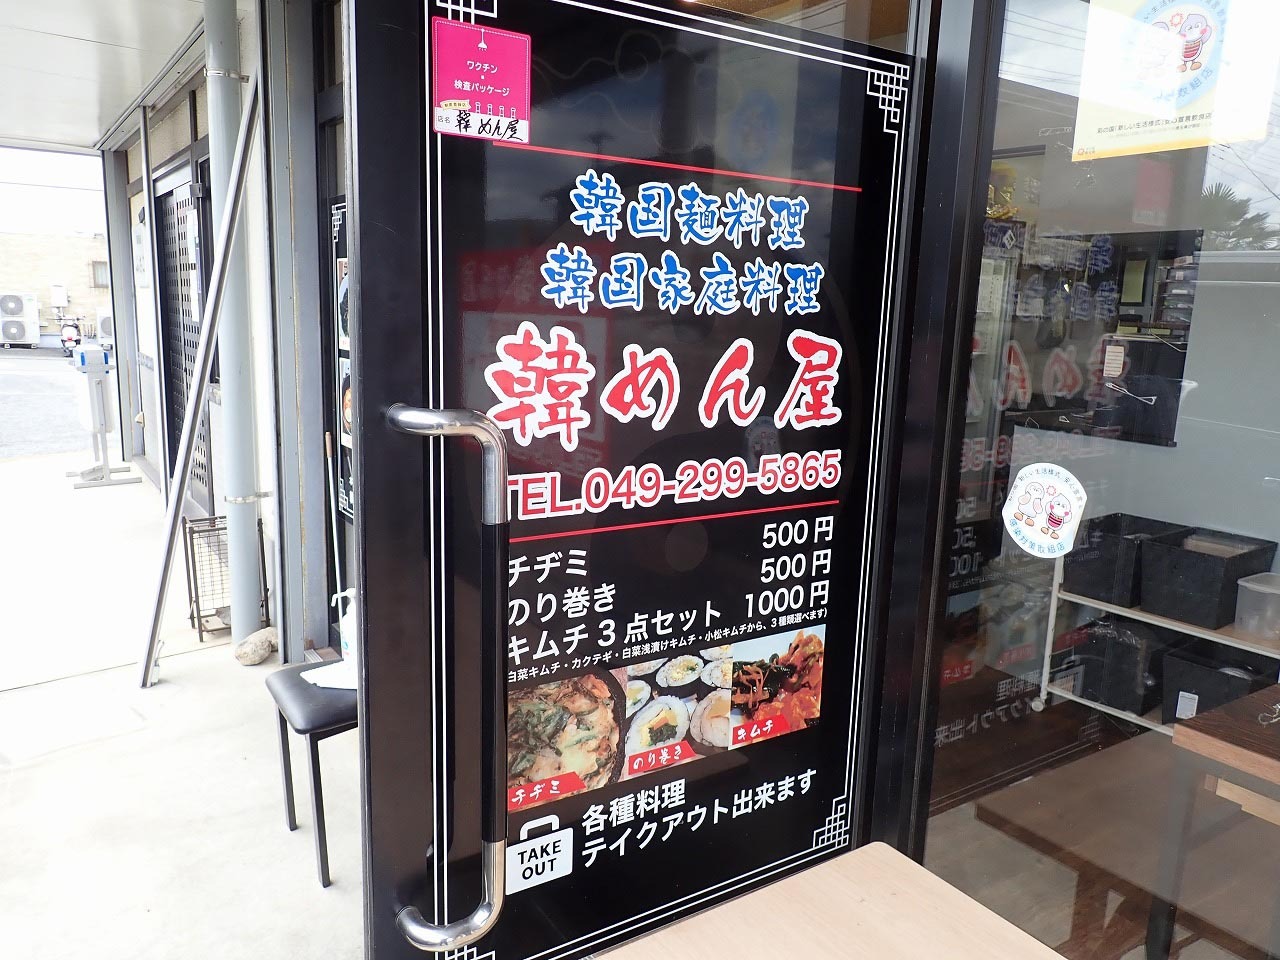 これは……韓国麵料理・韓国家庭料理のお店「韓めん屋」ですよね……。